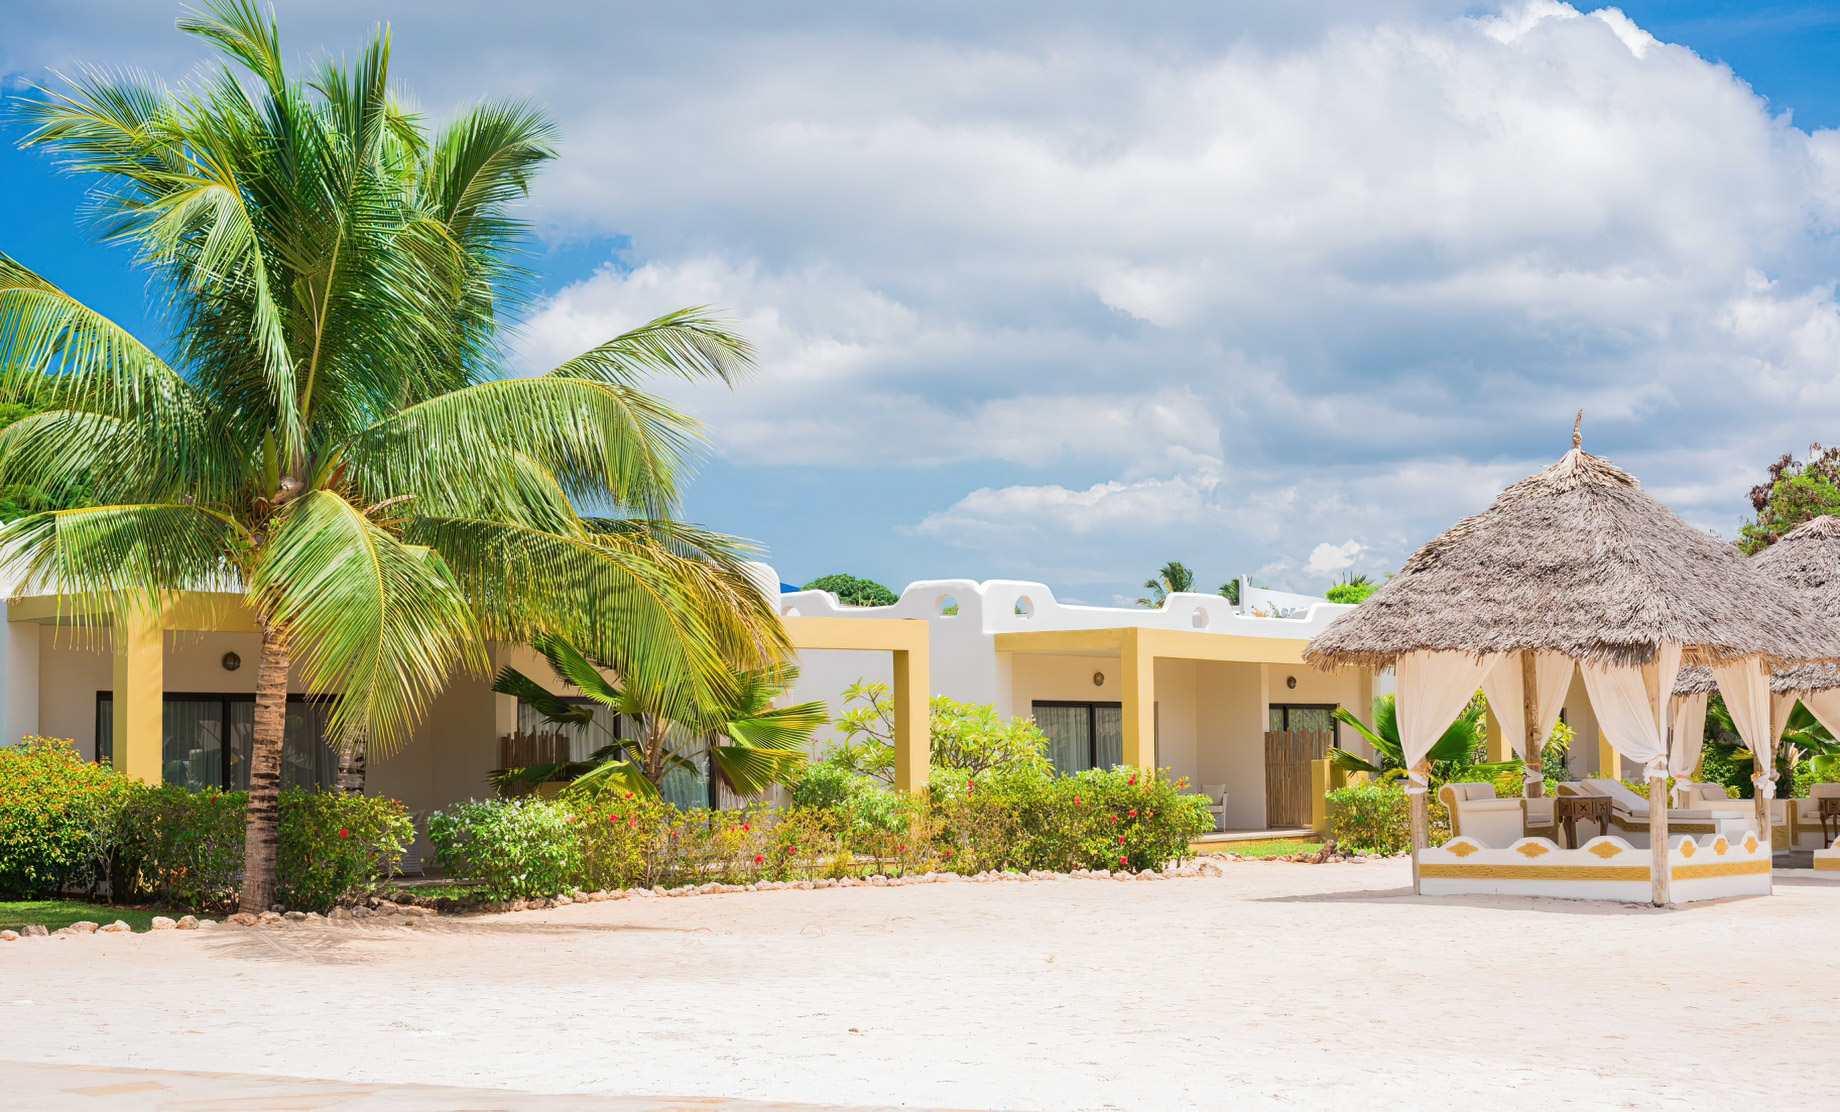 Gold Zanzibar Beach House & Spa Resort – Nungwi, Zanzibar, Tanzania – Cabanas